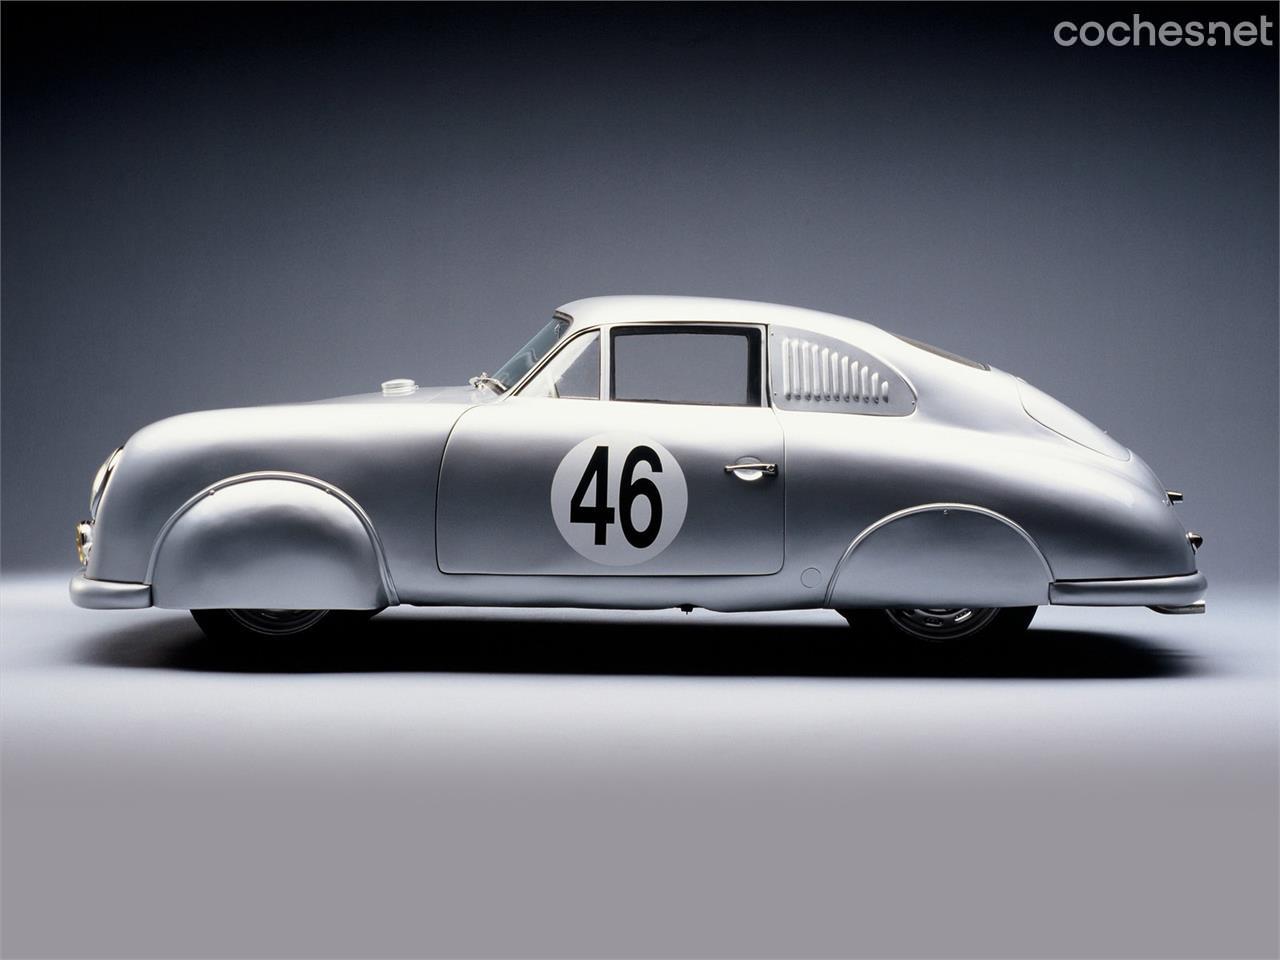 La principal fuente de inspiración a la hora de crear esta serie limitada para el Centenario de las 24 Horas de Le Mans fue este Porsche 356 SL que compitió en la edición de 1951.